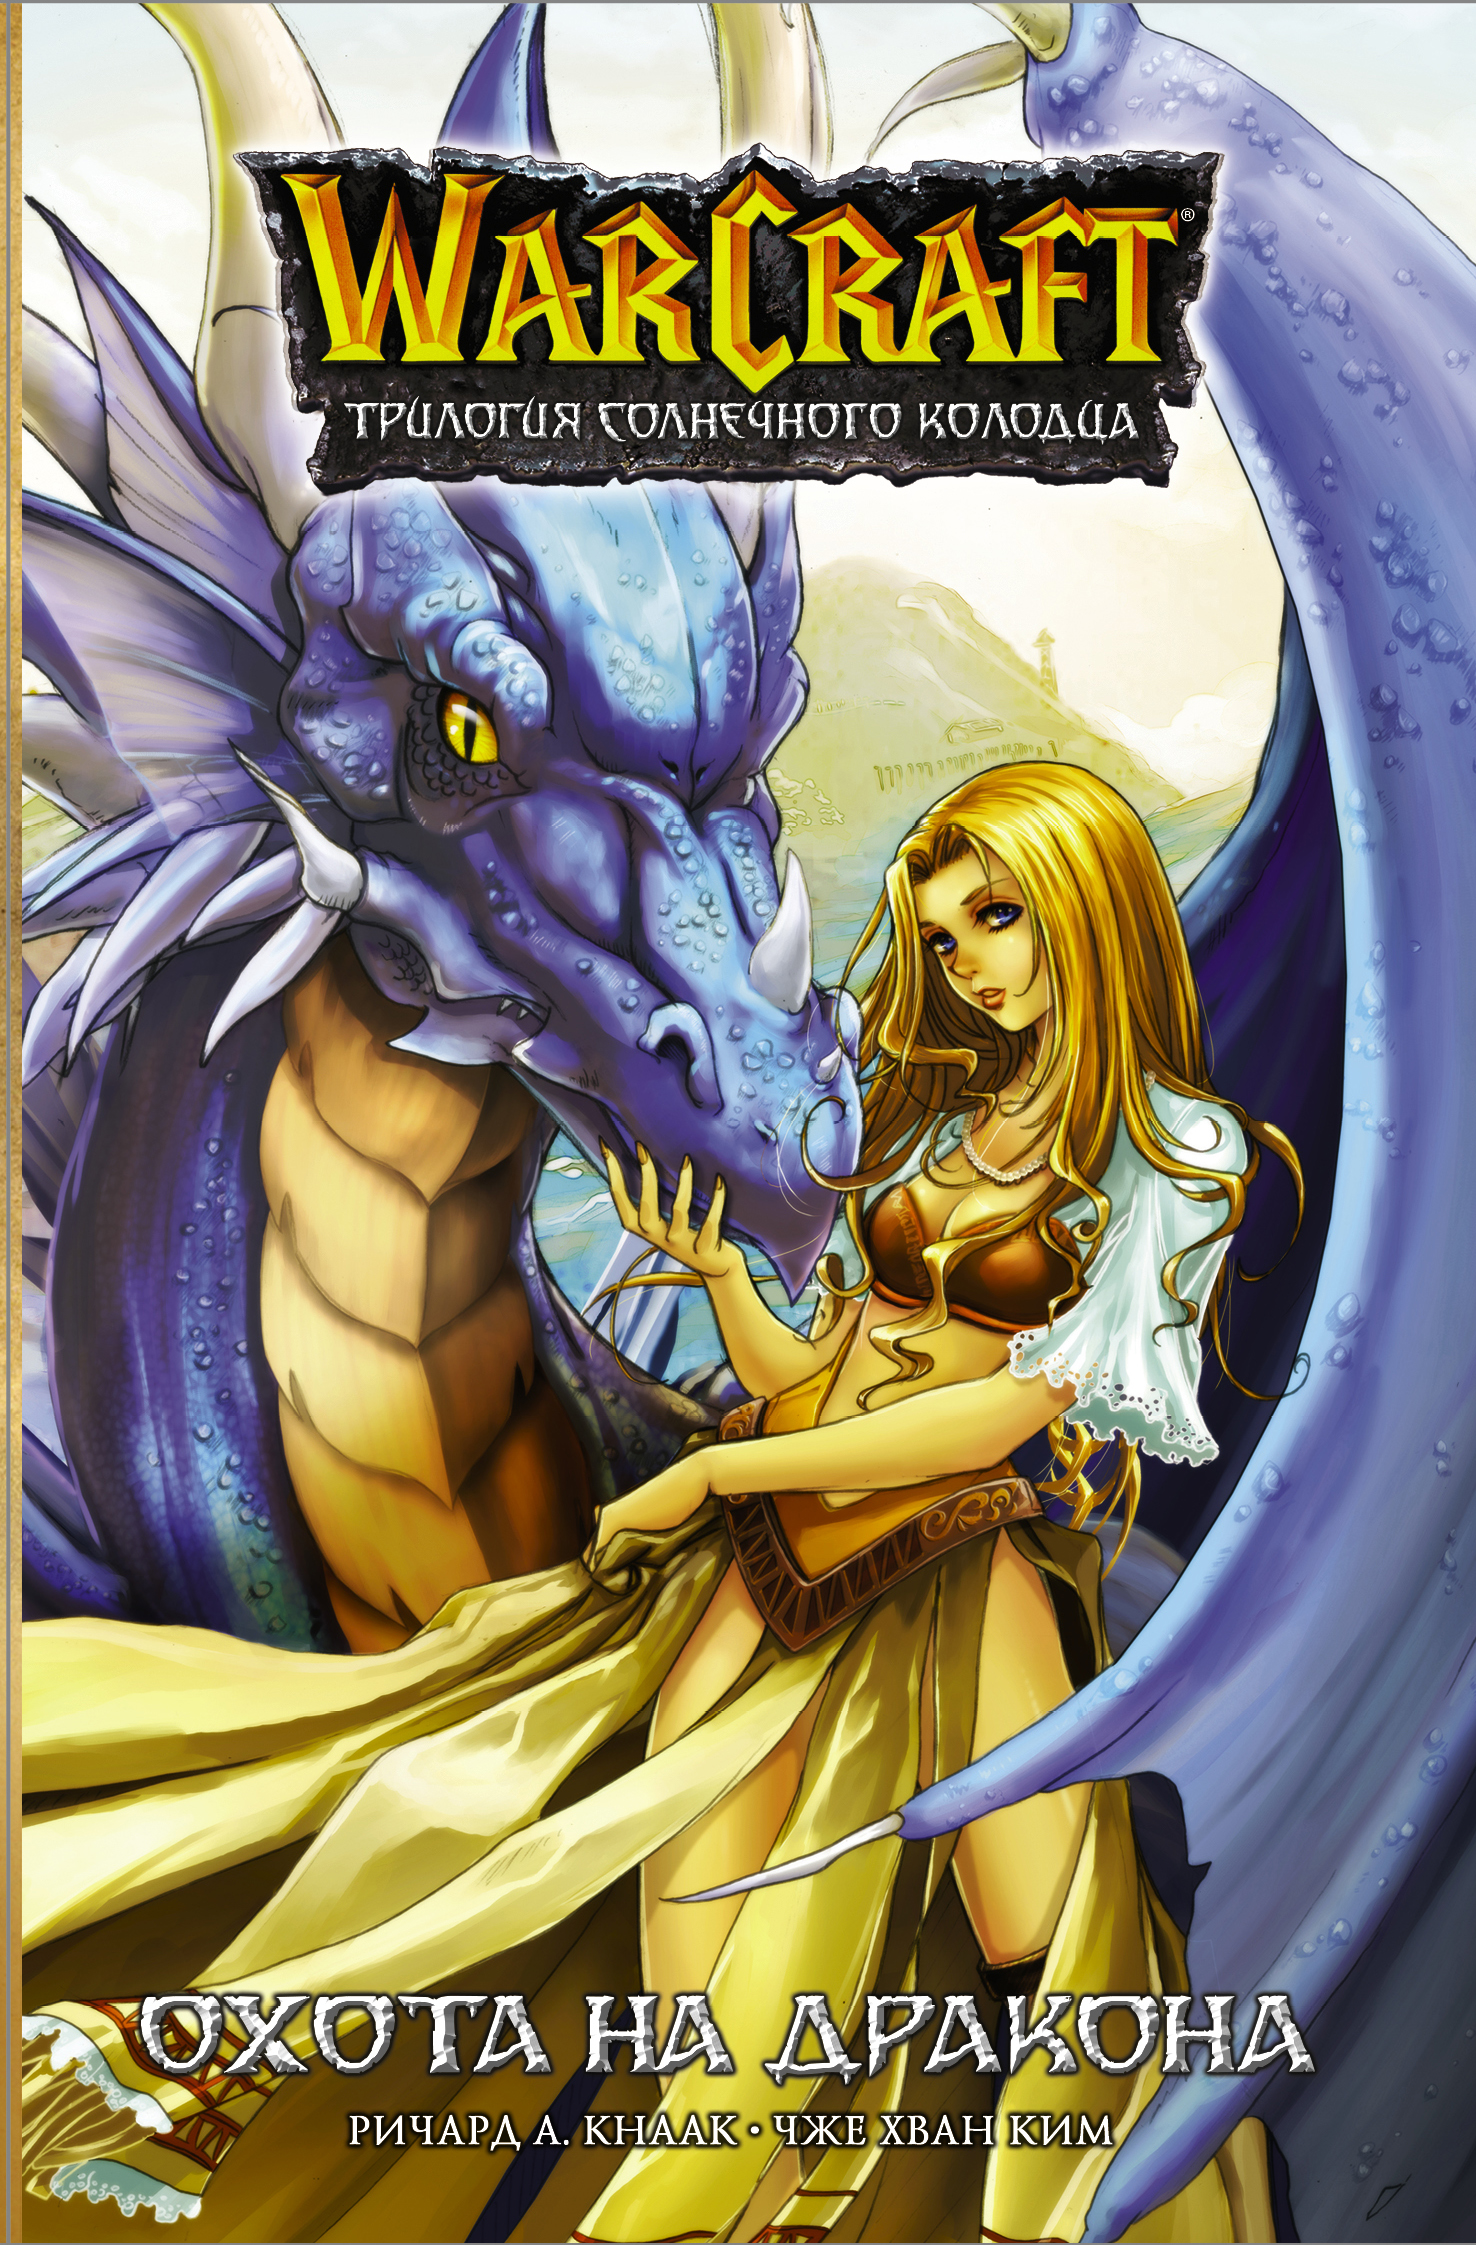 Warcraft. Трилогия Солнечного колодца: Охота на дракона кнаак ричард warcraft трилогия солнечного колодца охота на дракона